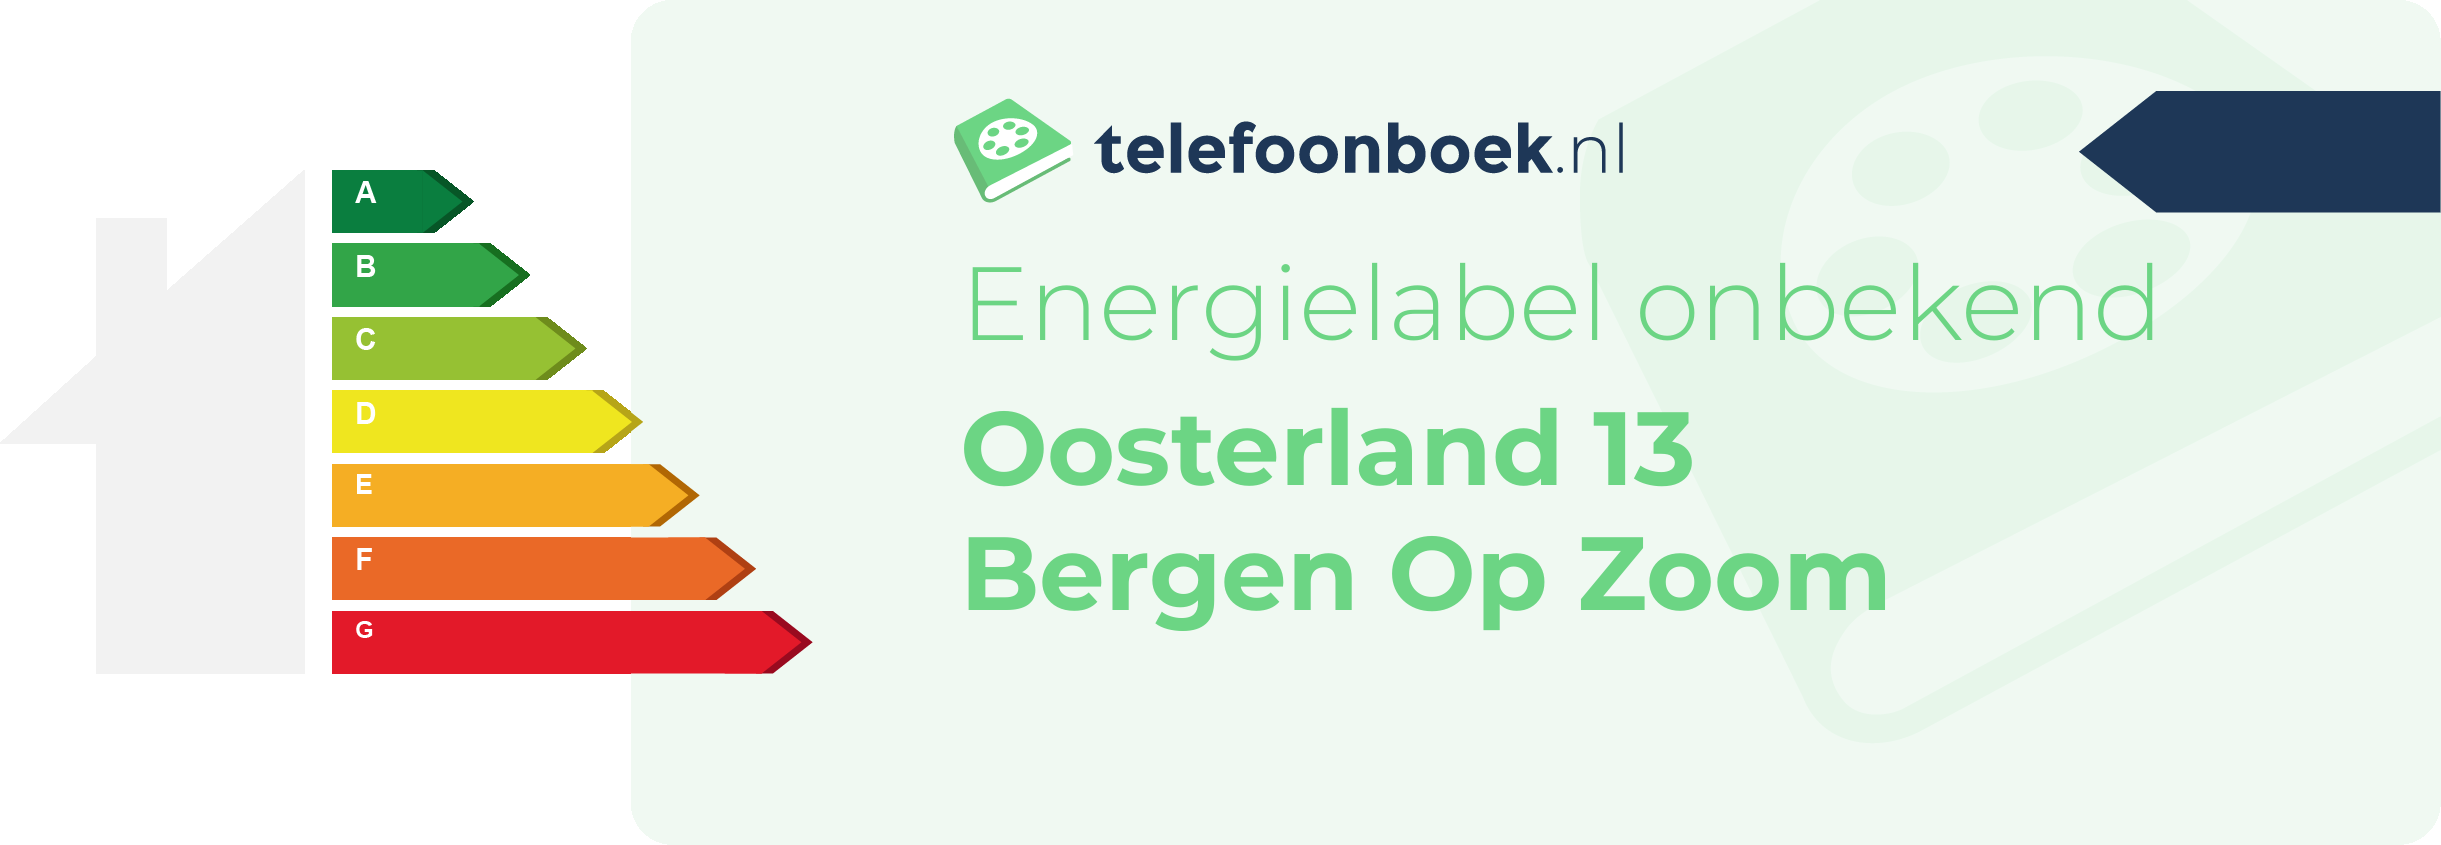 Energielabel Oosterland 13 Bergen Op Zoom